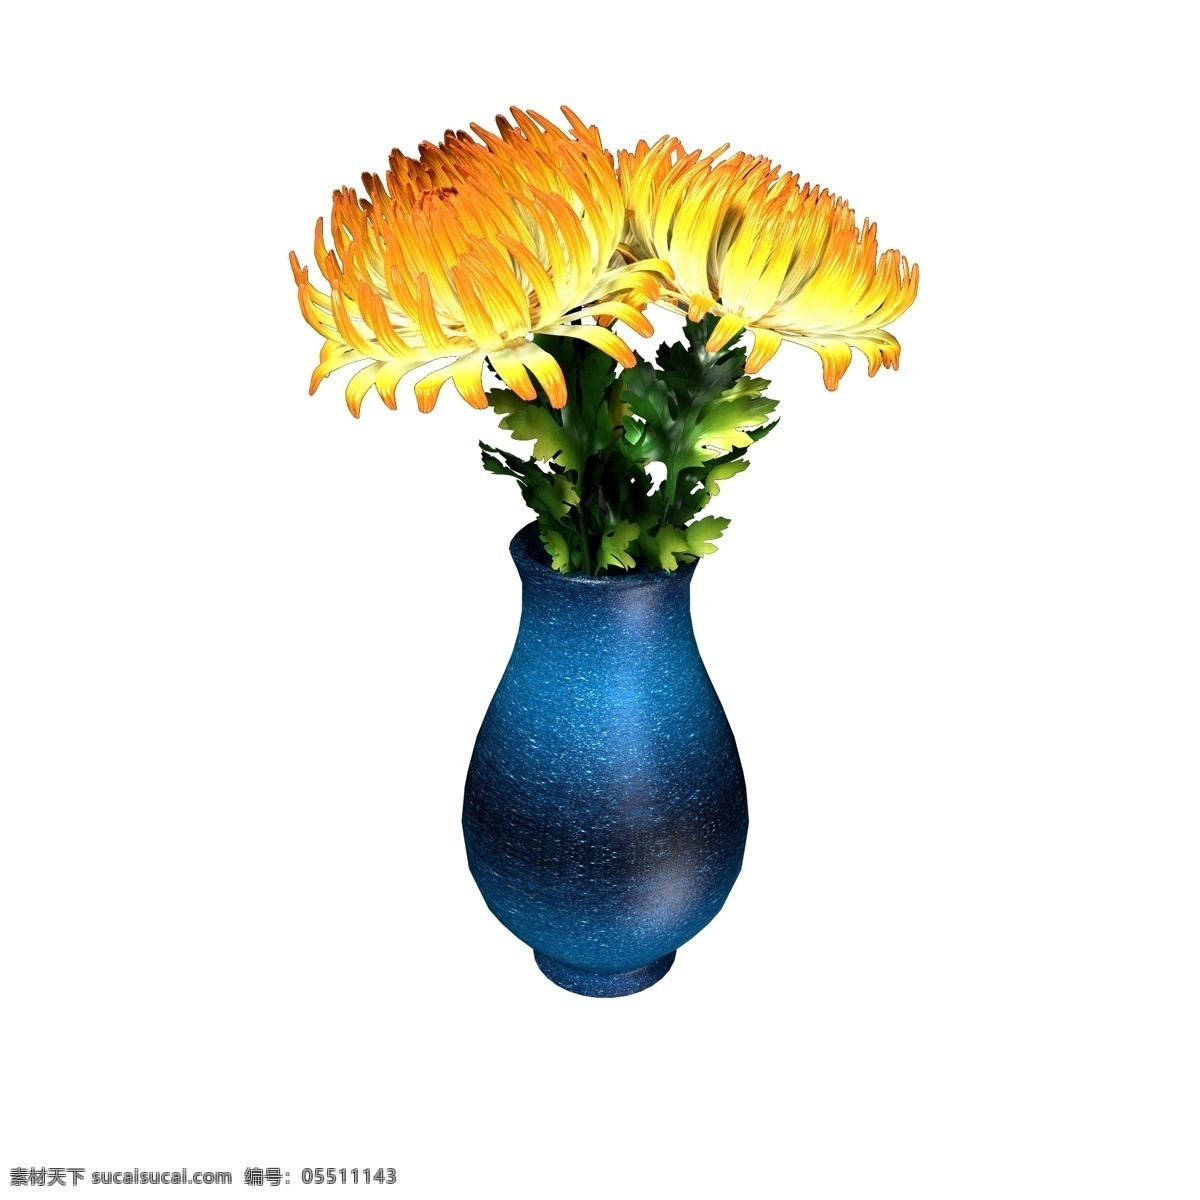 植物类 通用 元素 花瓶 插花 菊花 黄色 波斯菊 植物 写实 立体 蓝色 渐变 陶瓷